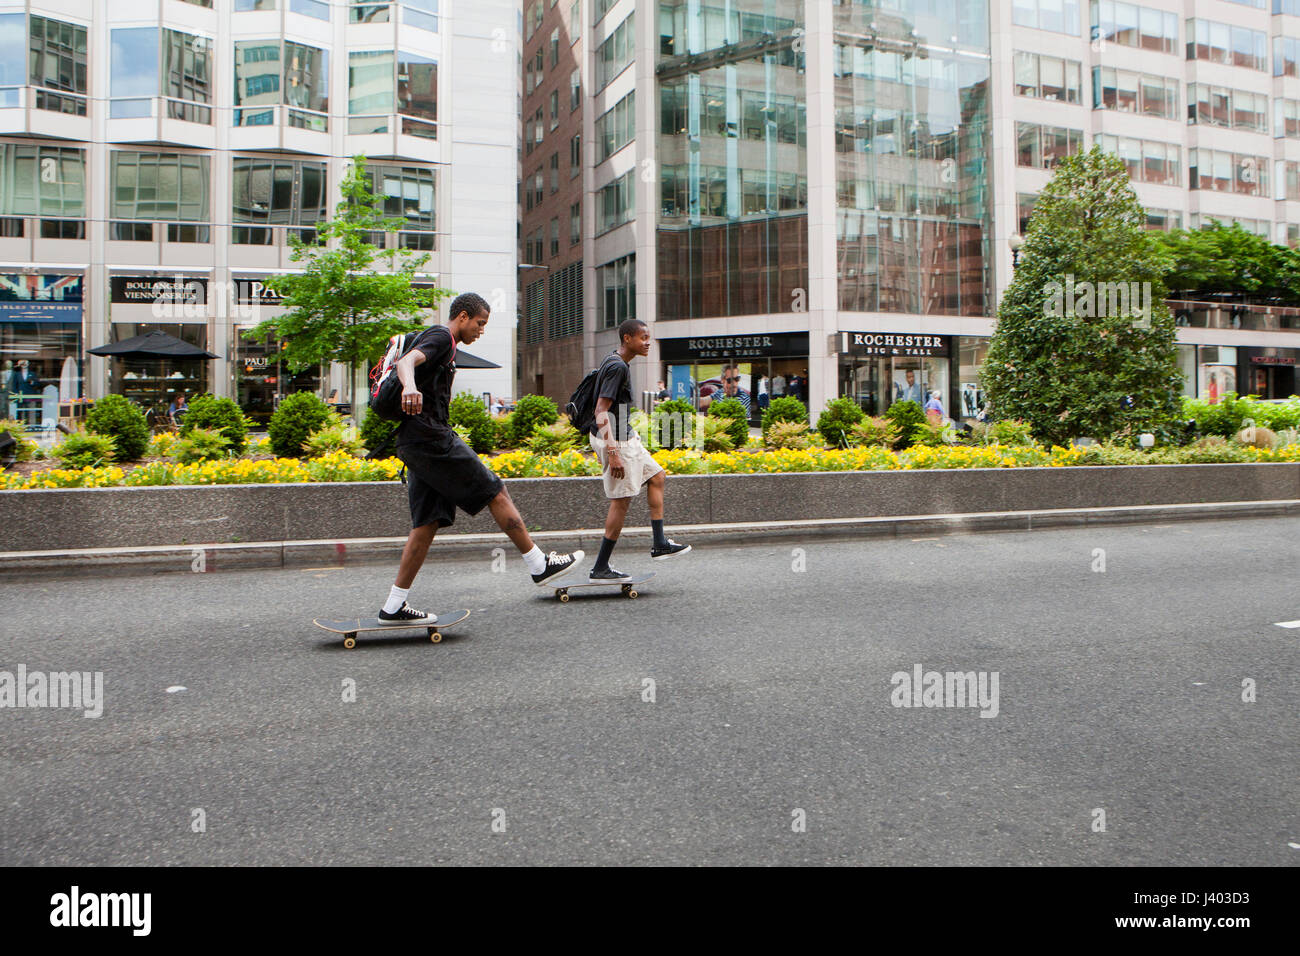 Giovani skateboarders equitazione in strada di città - USA Foto Stock